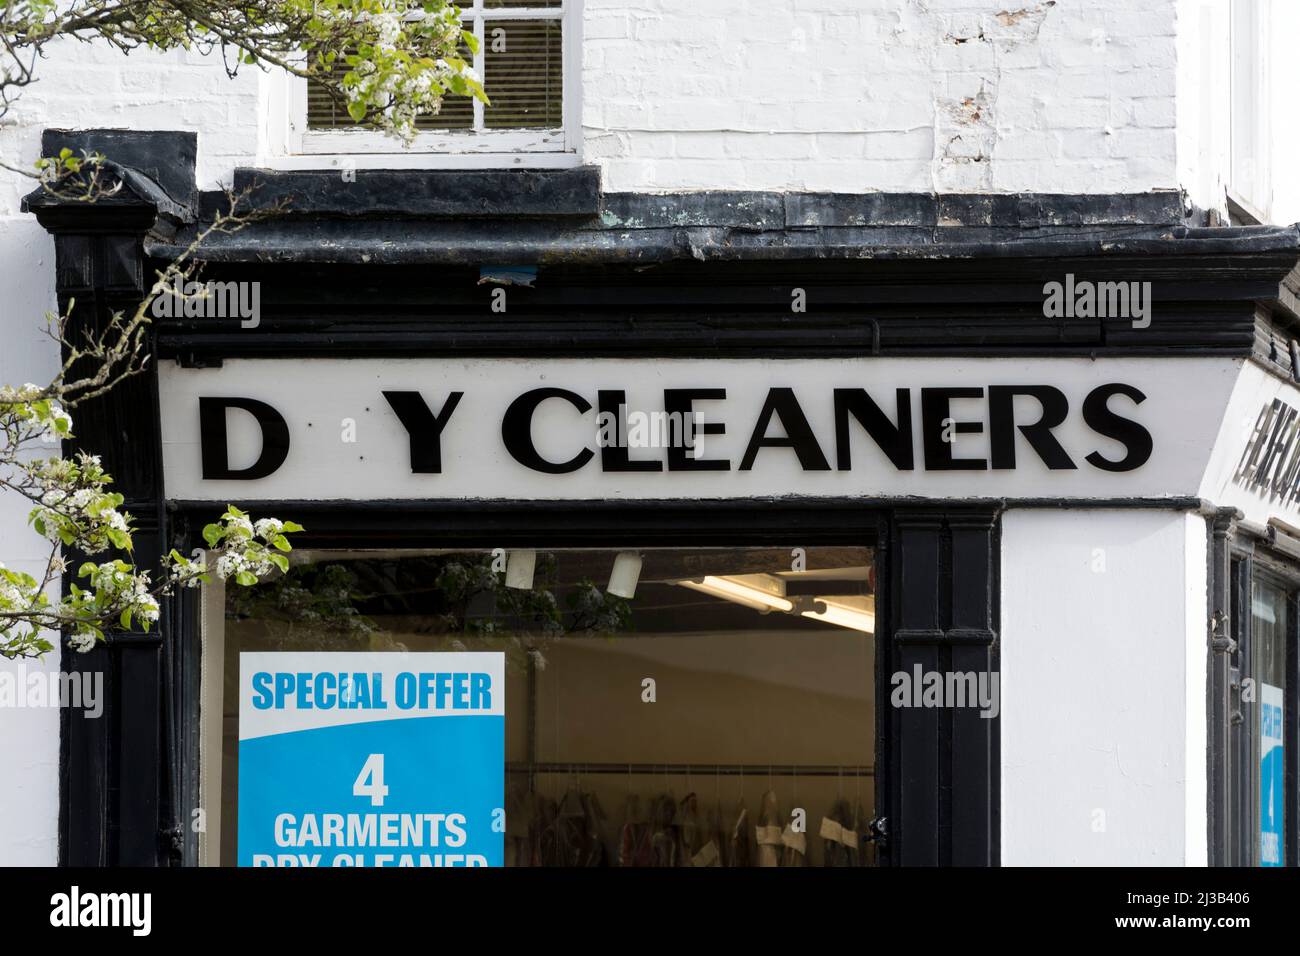 Lettre manquante sur le magasin de produits de nettoyage à sec, Market place, Warwick, Royaume-Uni Banque D'Images